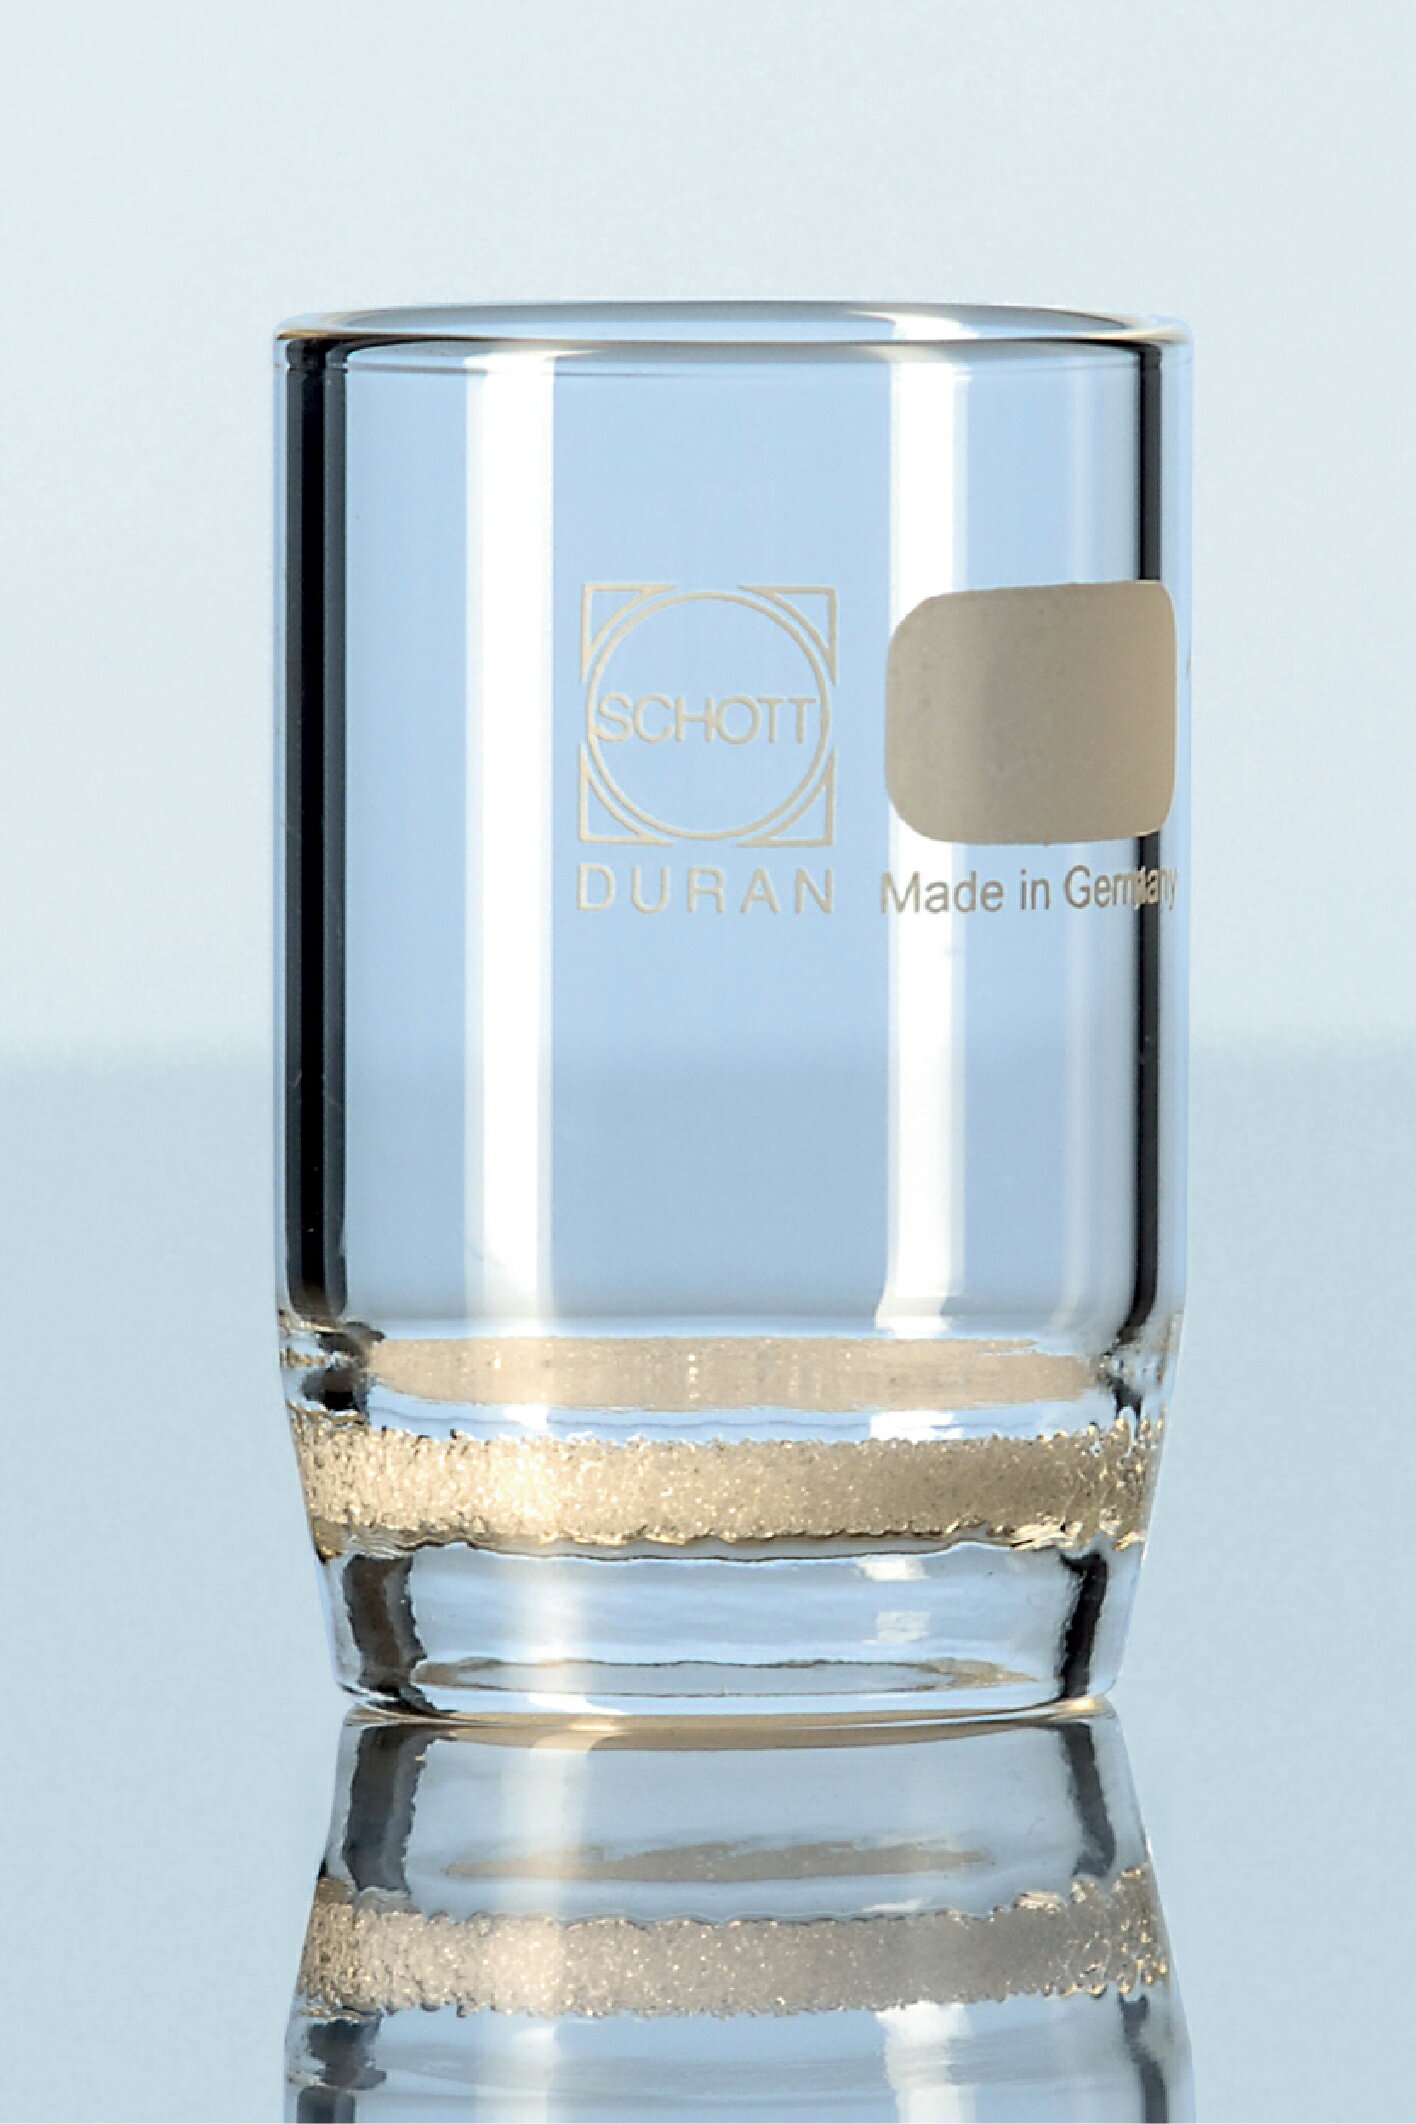 《實驗室耗材專賣》德國 ROBU 玻璃過濾器(坩堝型)1G4 30ML Filter crucible 實驗儀器 玻璃製品